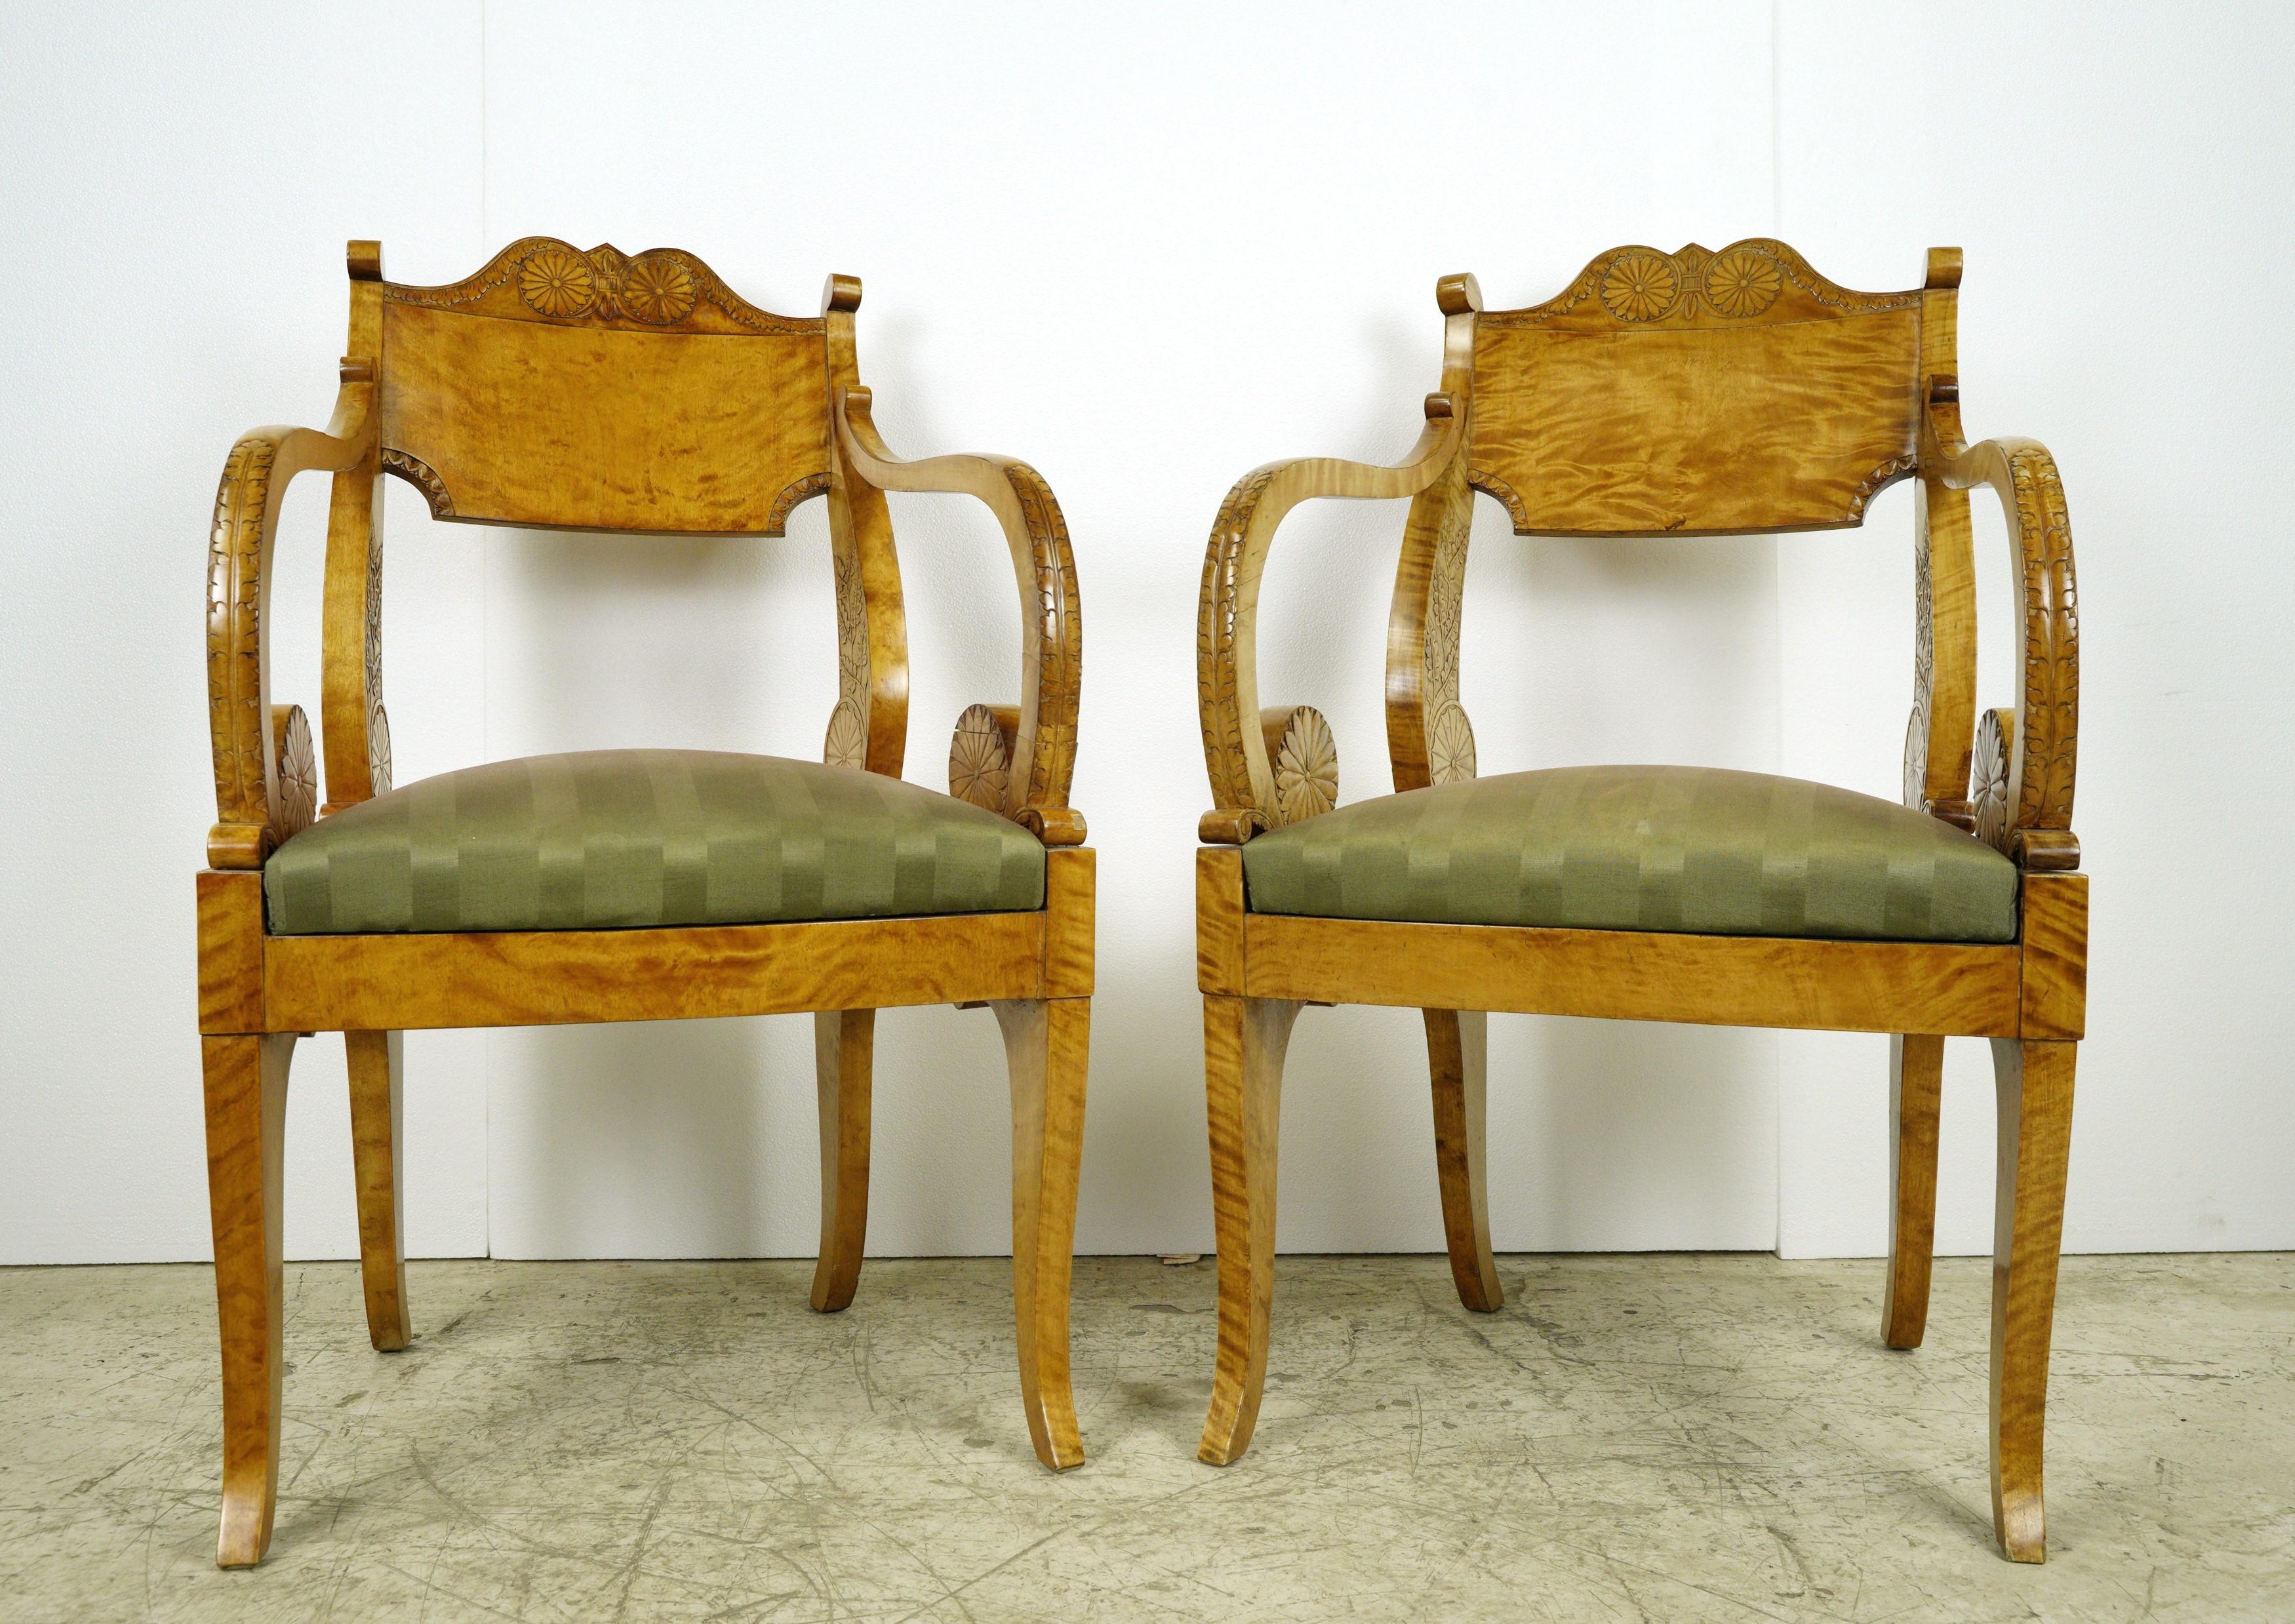 20th Century Antique Biedermeier Period Maple Chairs & Tea Table Set For Sale